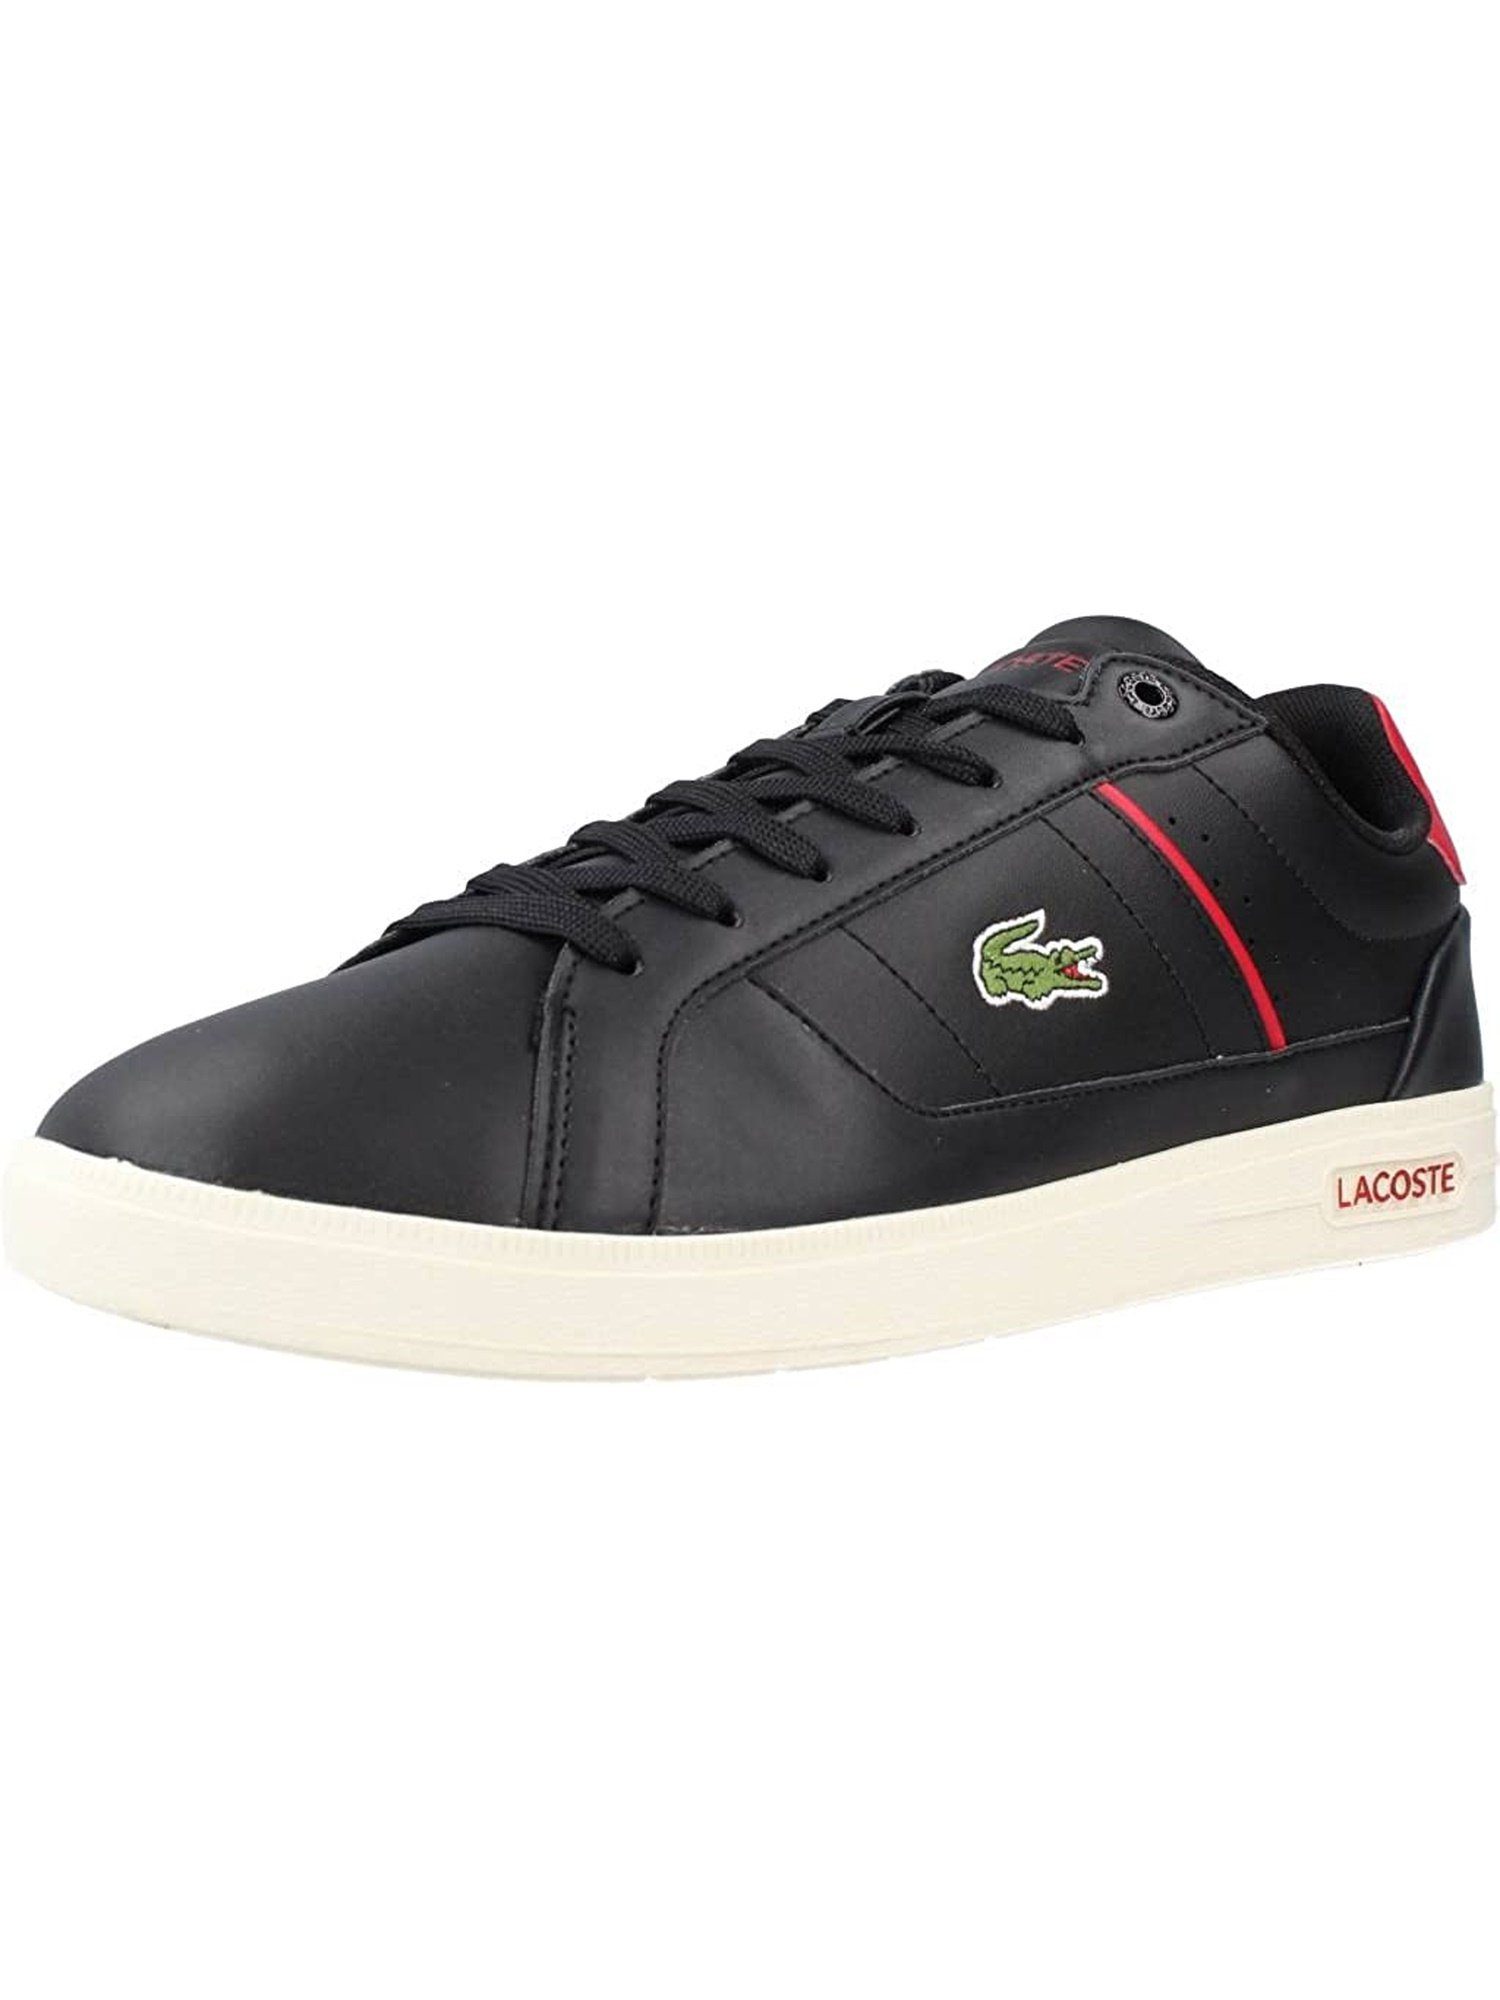 Lacoste Sportschuhe Sneaker Sneaker Leder 222 schwarz PRO aus EUROPA mit